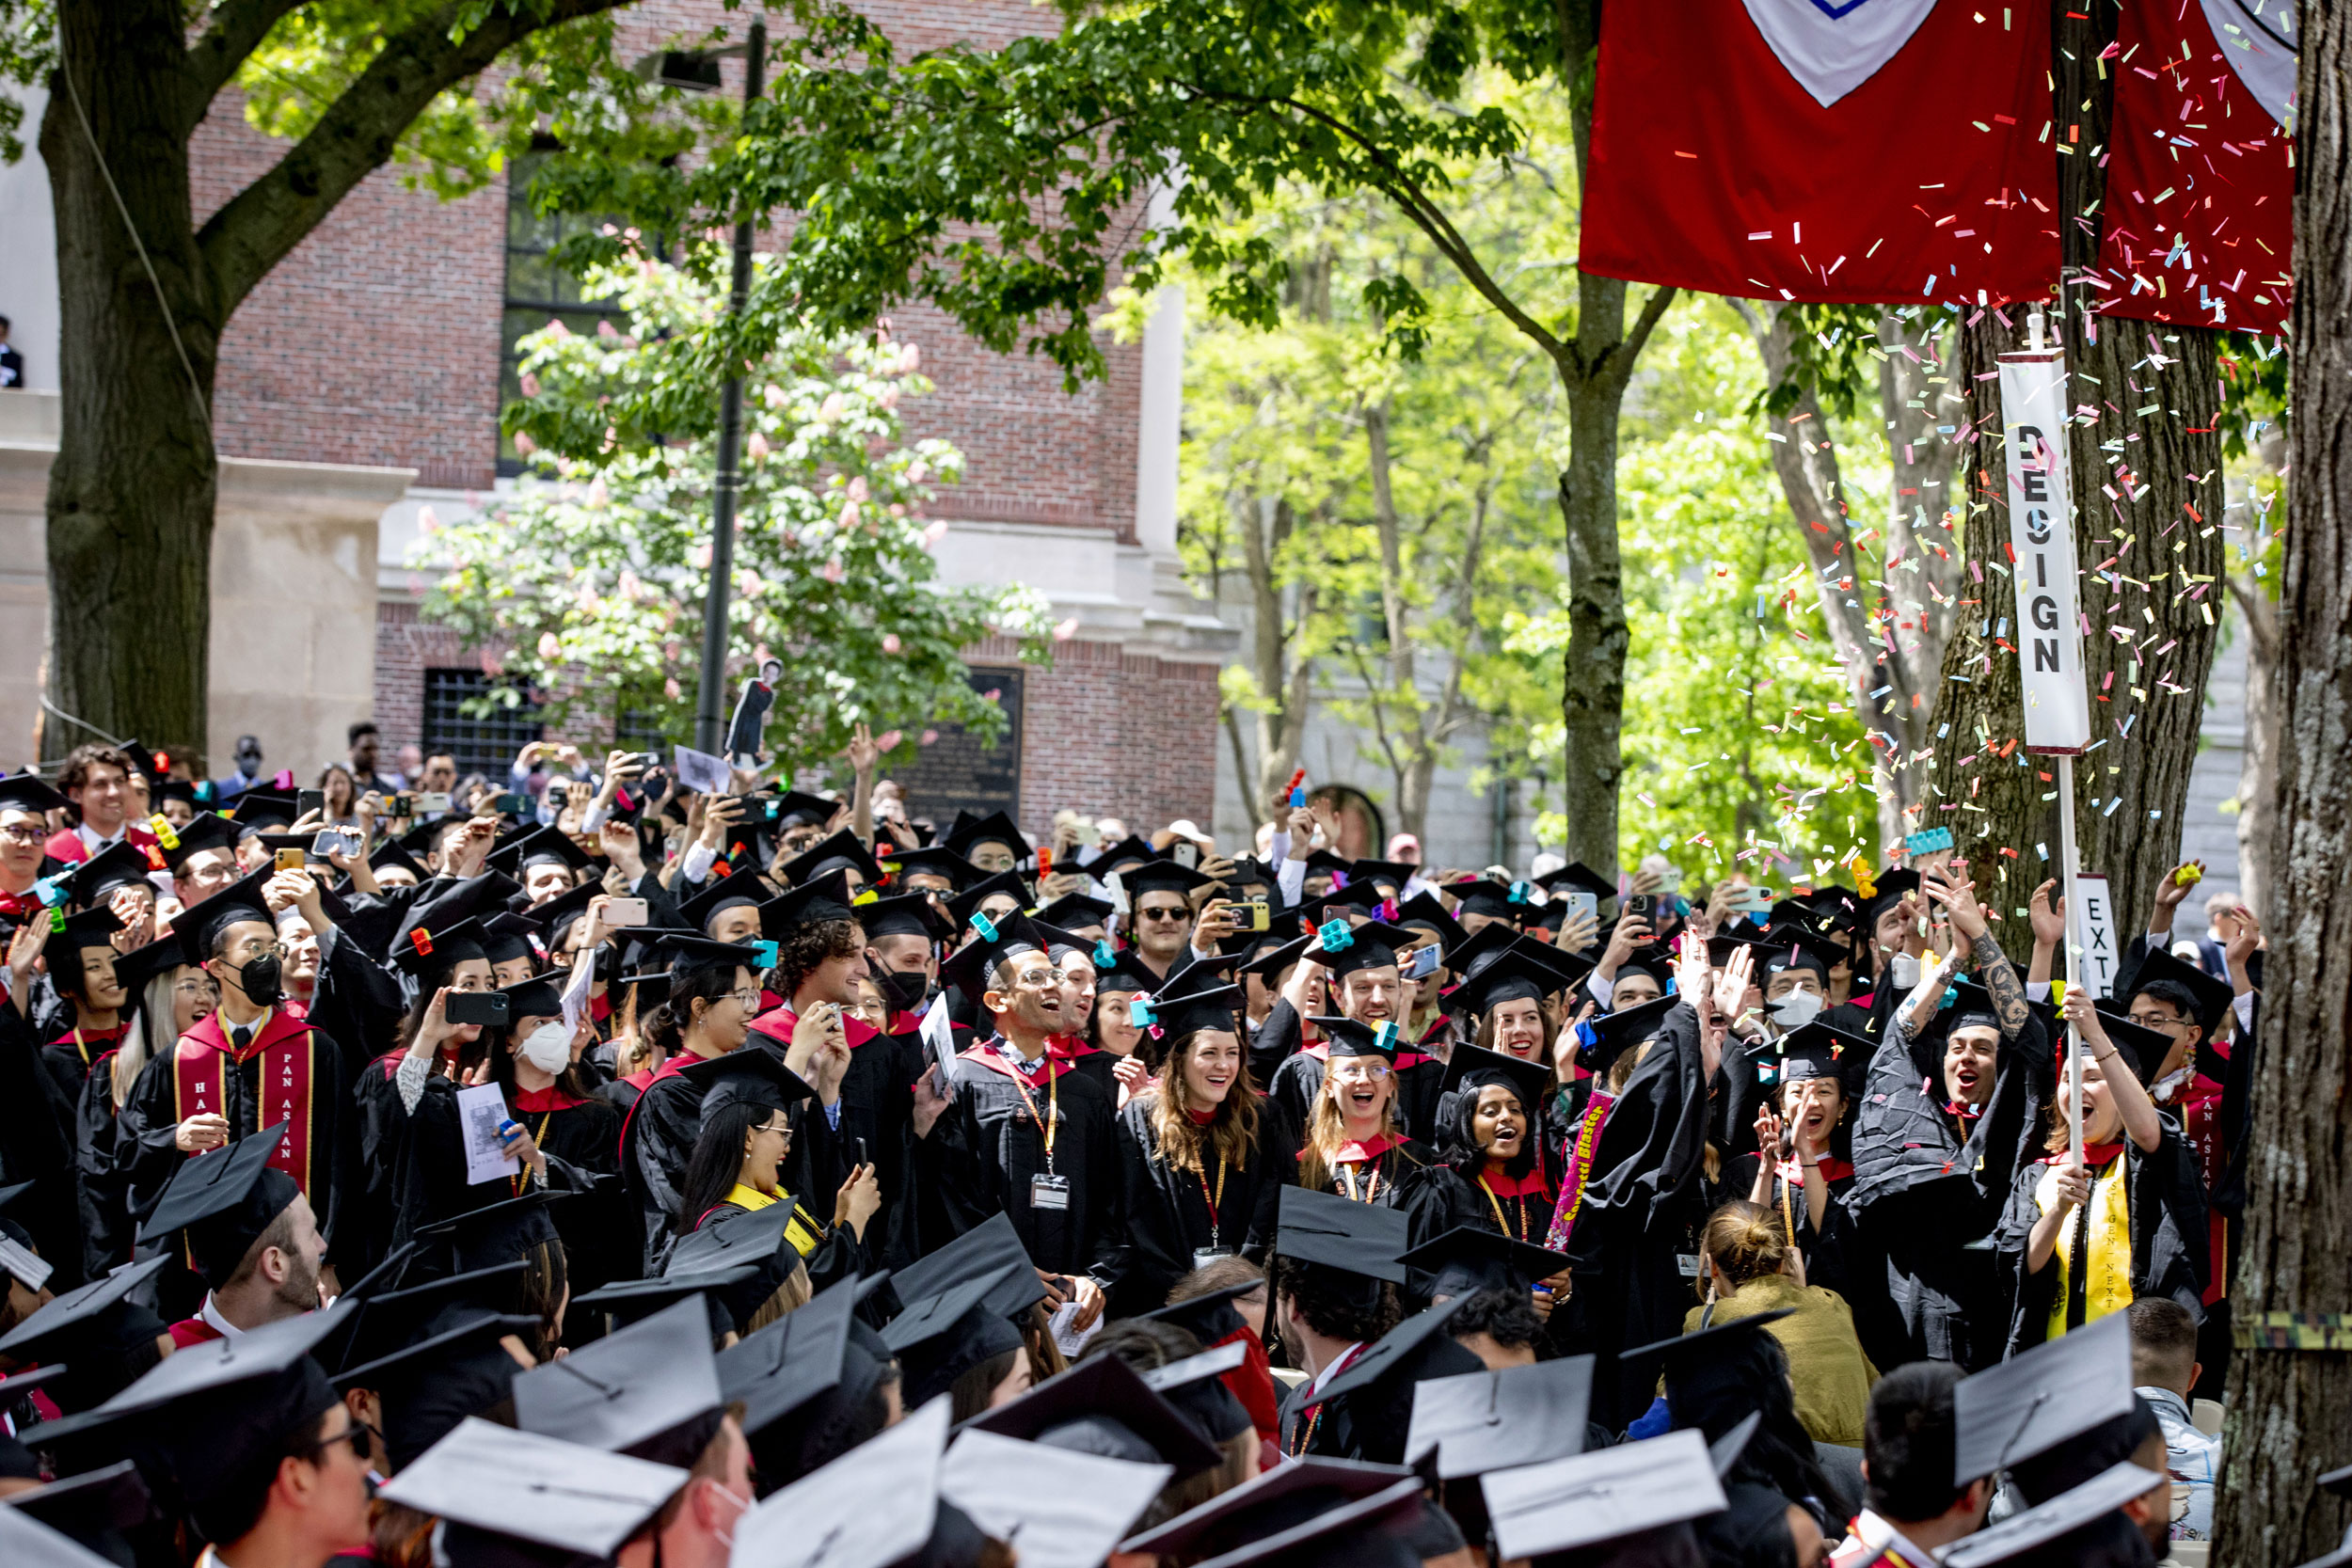 Harvard Graduate School of Design celebrates their conferral of degrees.